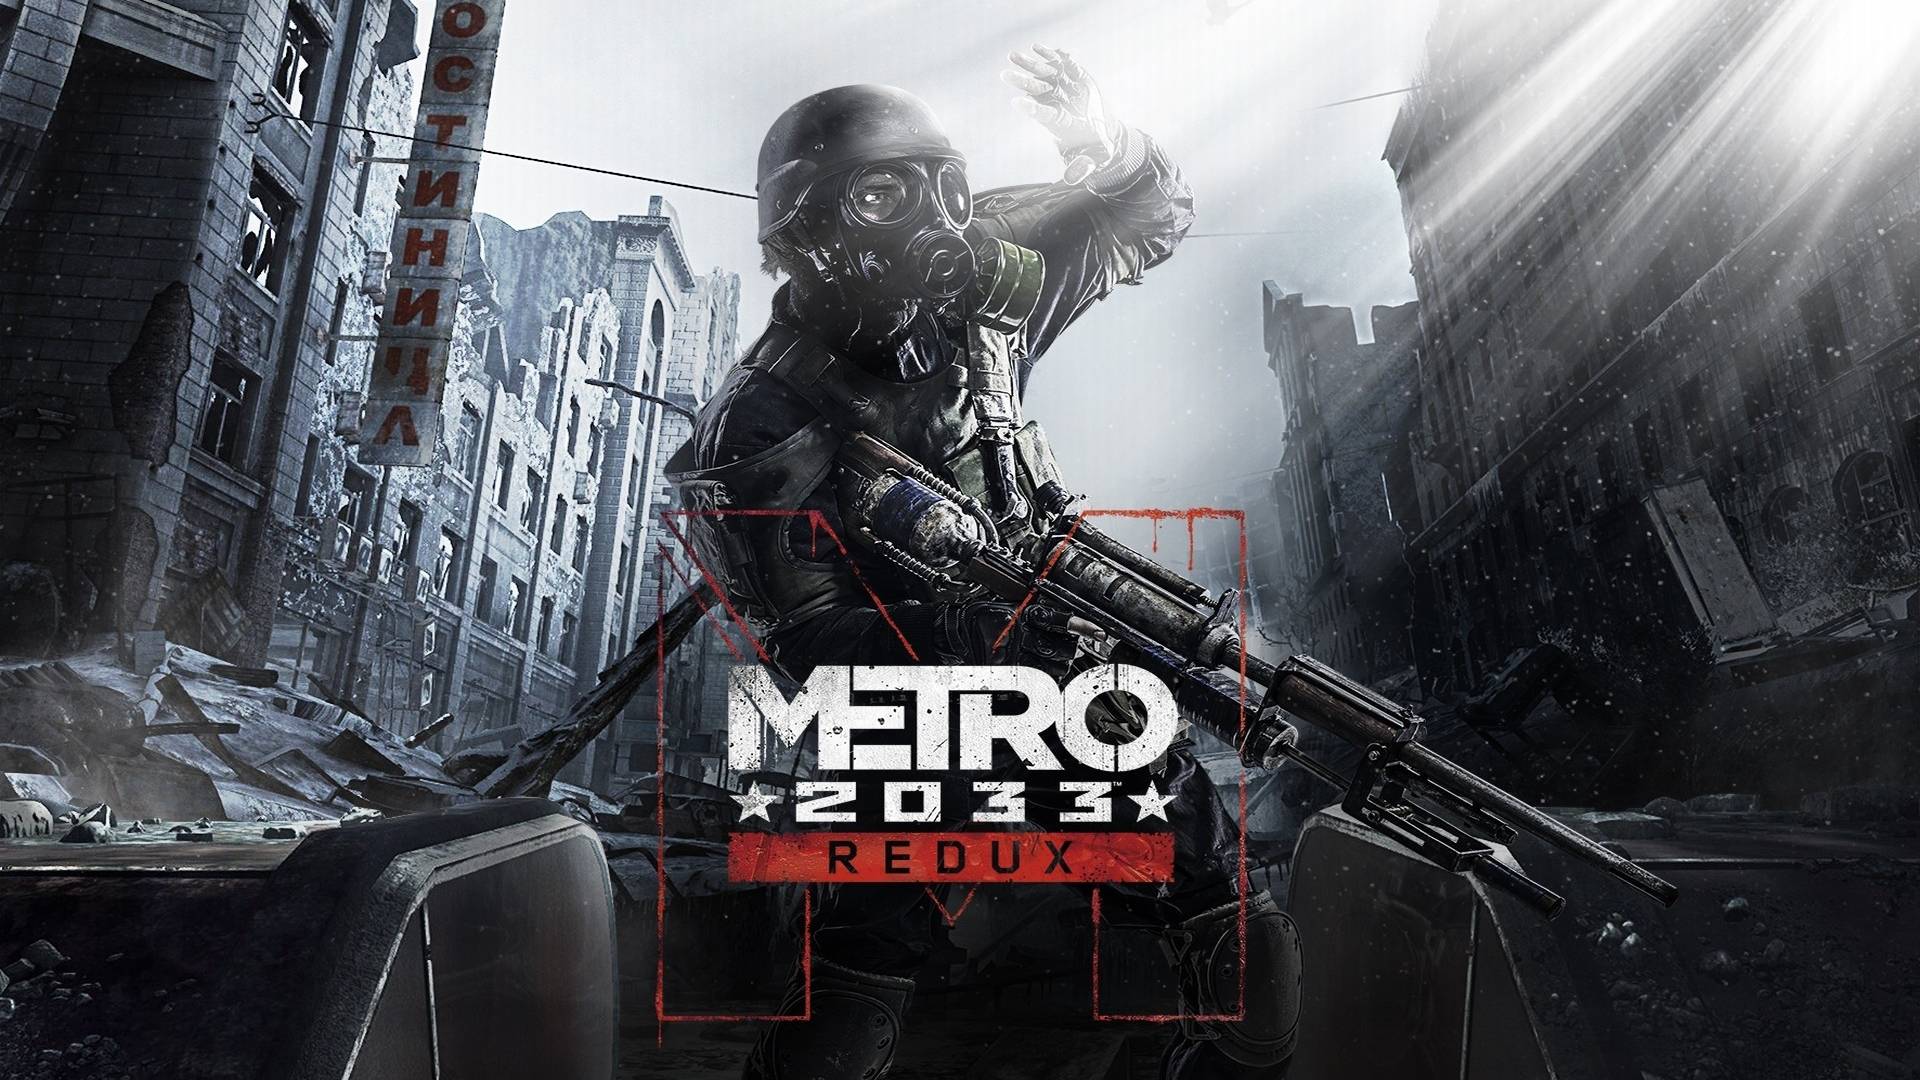 Стрим|Metro 2033 Redux | Прохождение |Часть 1|?Ready to Game?